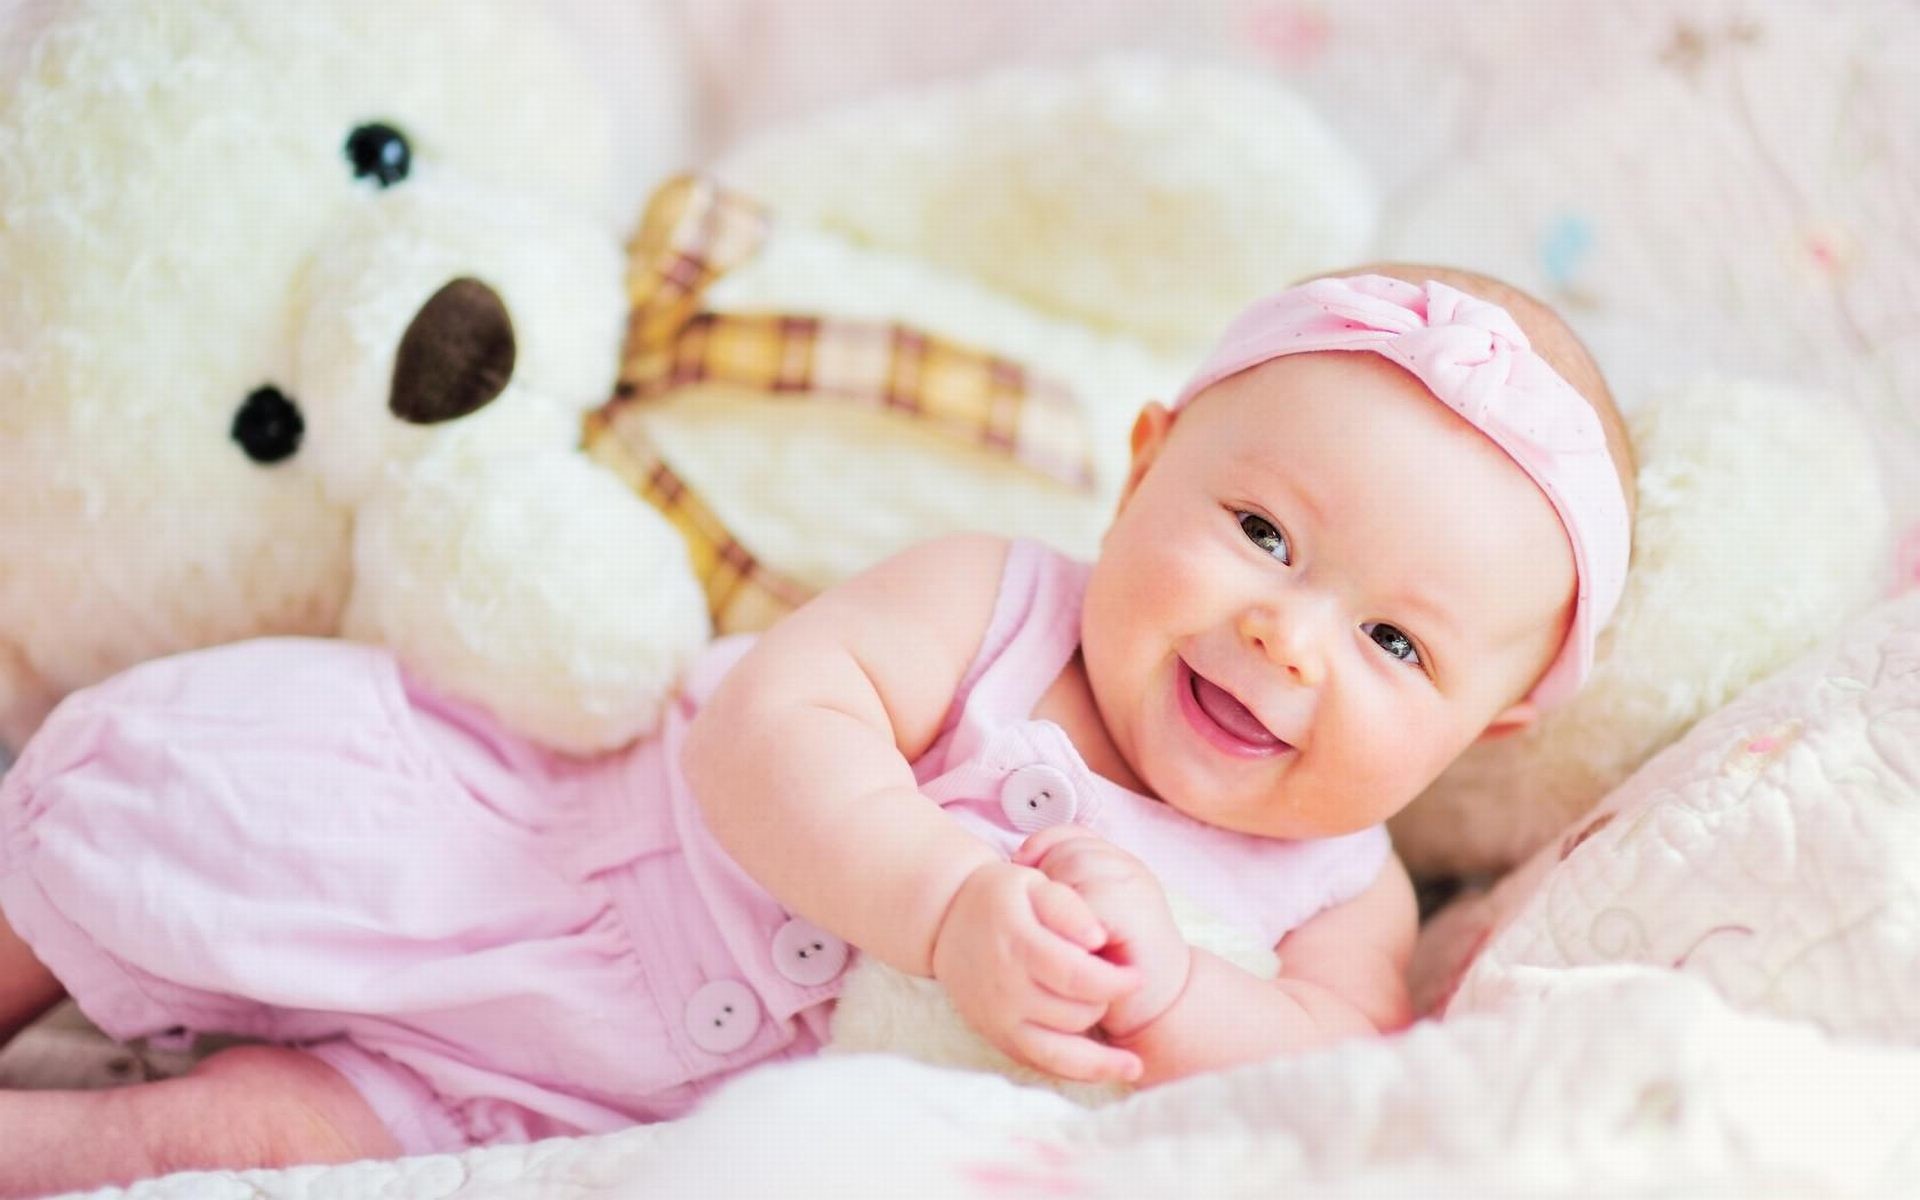 Smiling Cute Babies Wallpaper.